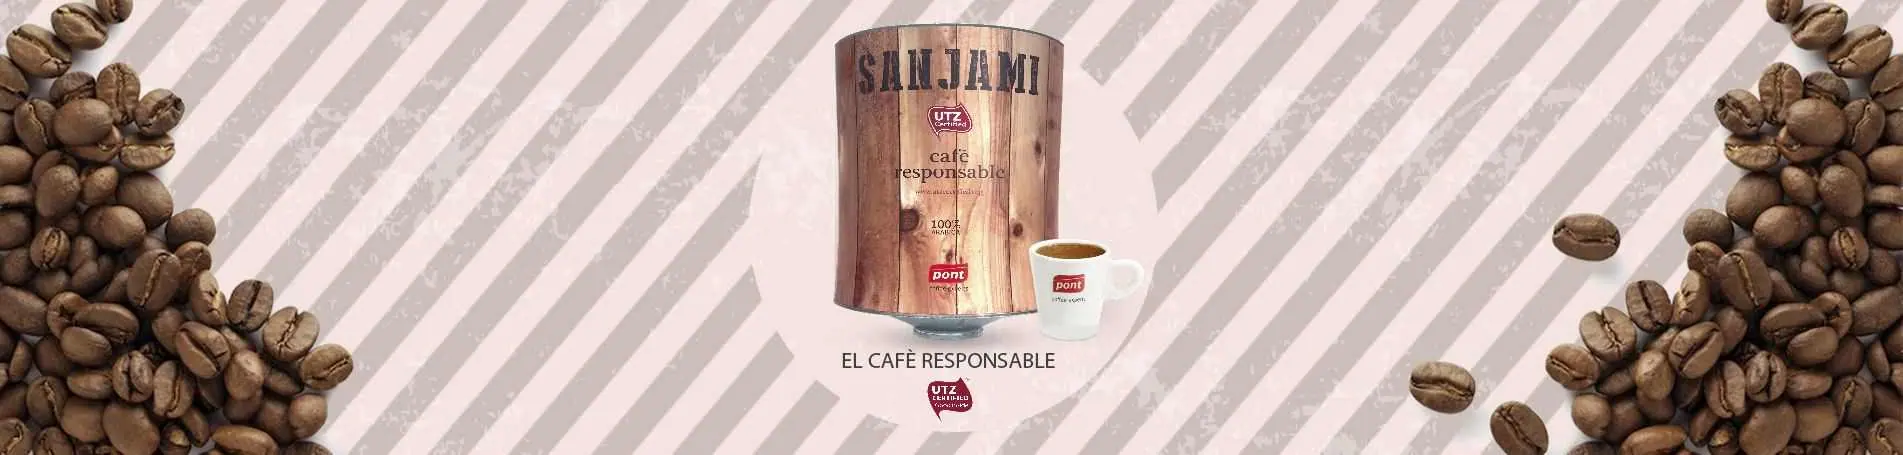 Nueva identidad para el café Sanjami de Cafès Pont